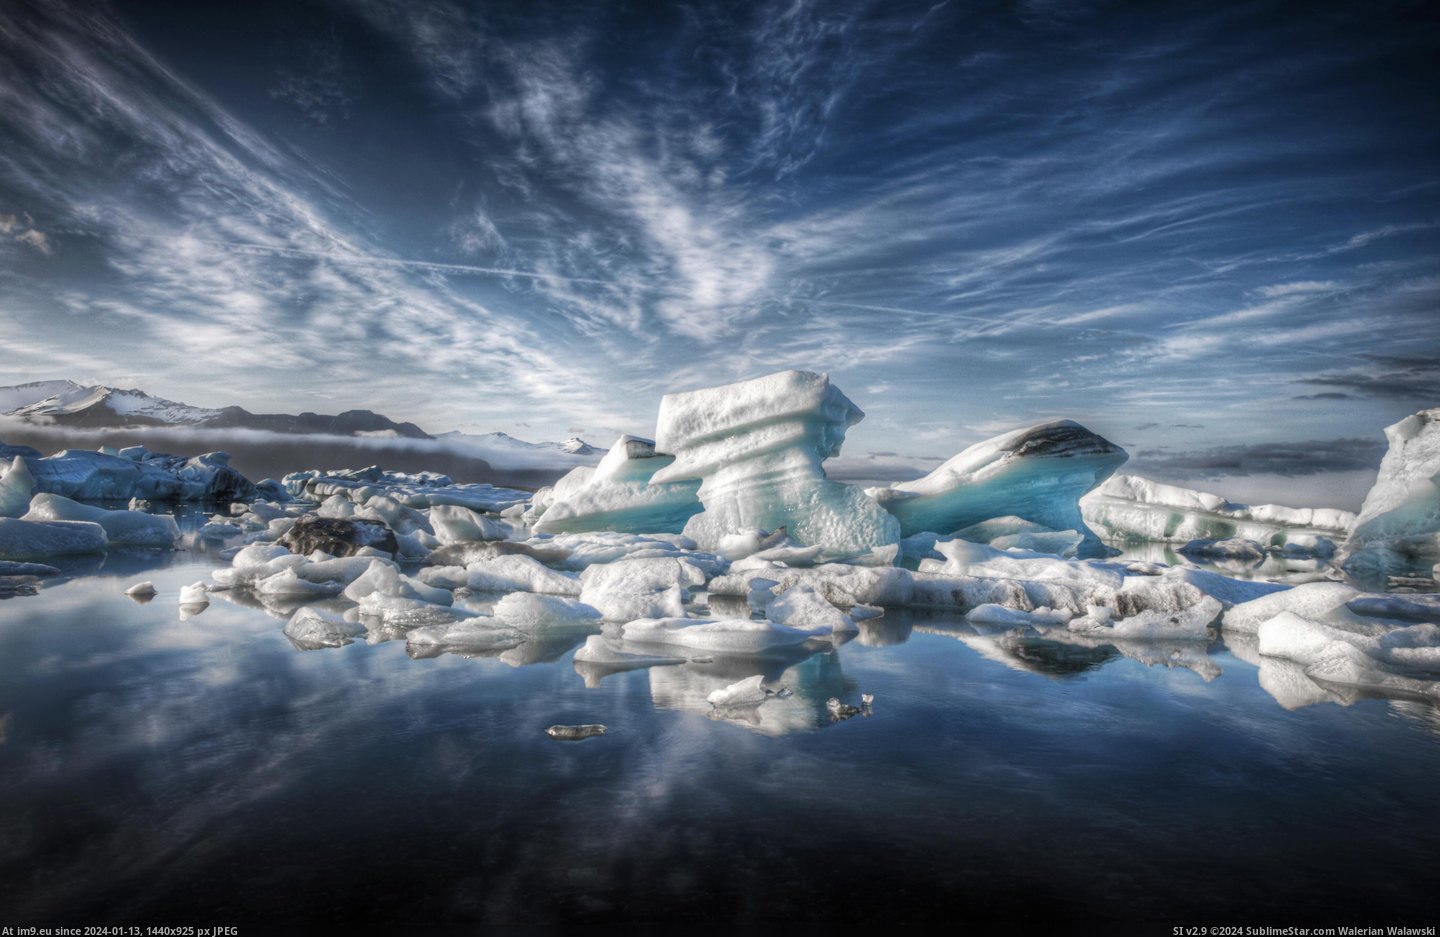 #Iceland #Glacial #Lagoon [Earthporn] Jökulsárlón Glacial Lagoon, Iceland [4147x2676] Pic. (Image of album My r/EARTHPORN favs))